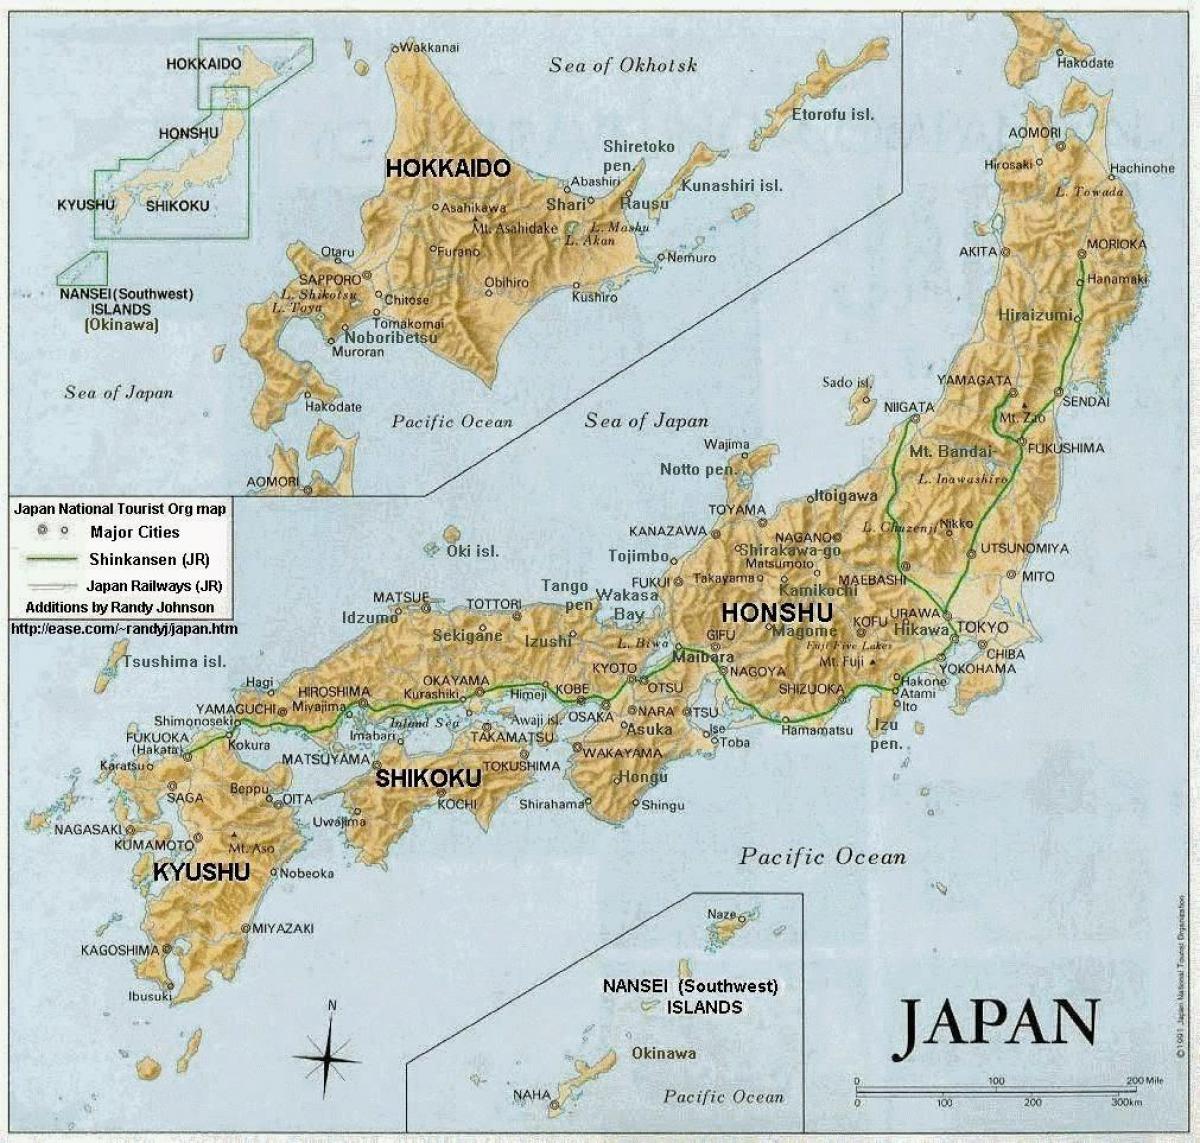 地形地图的日本 日本地图的地形 东亚 亚洲